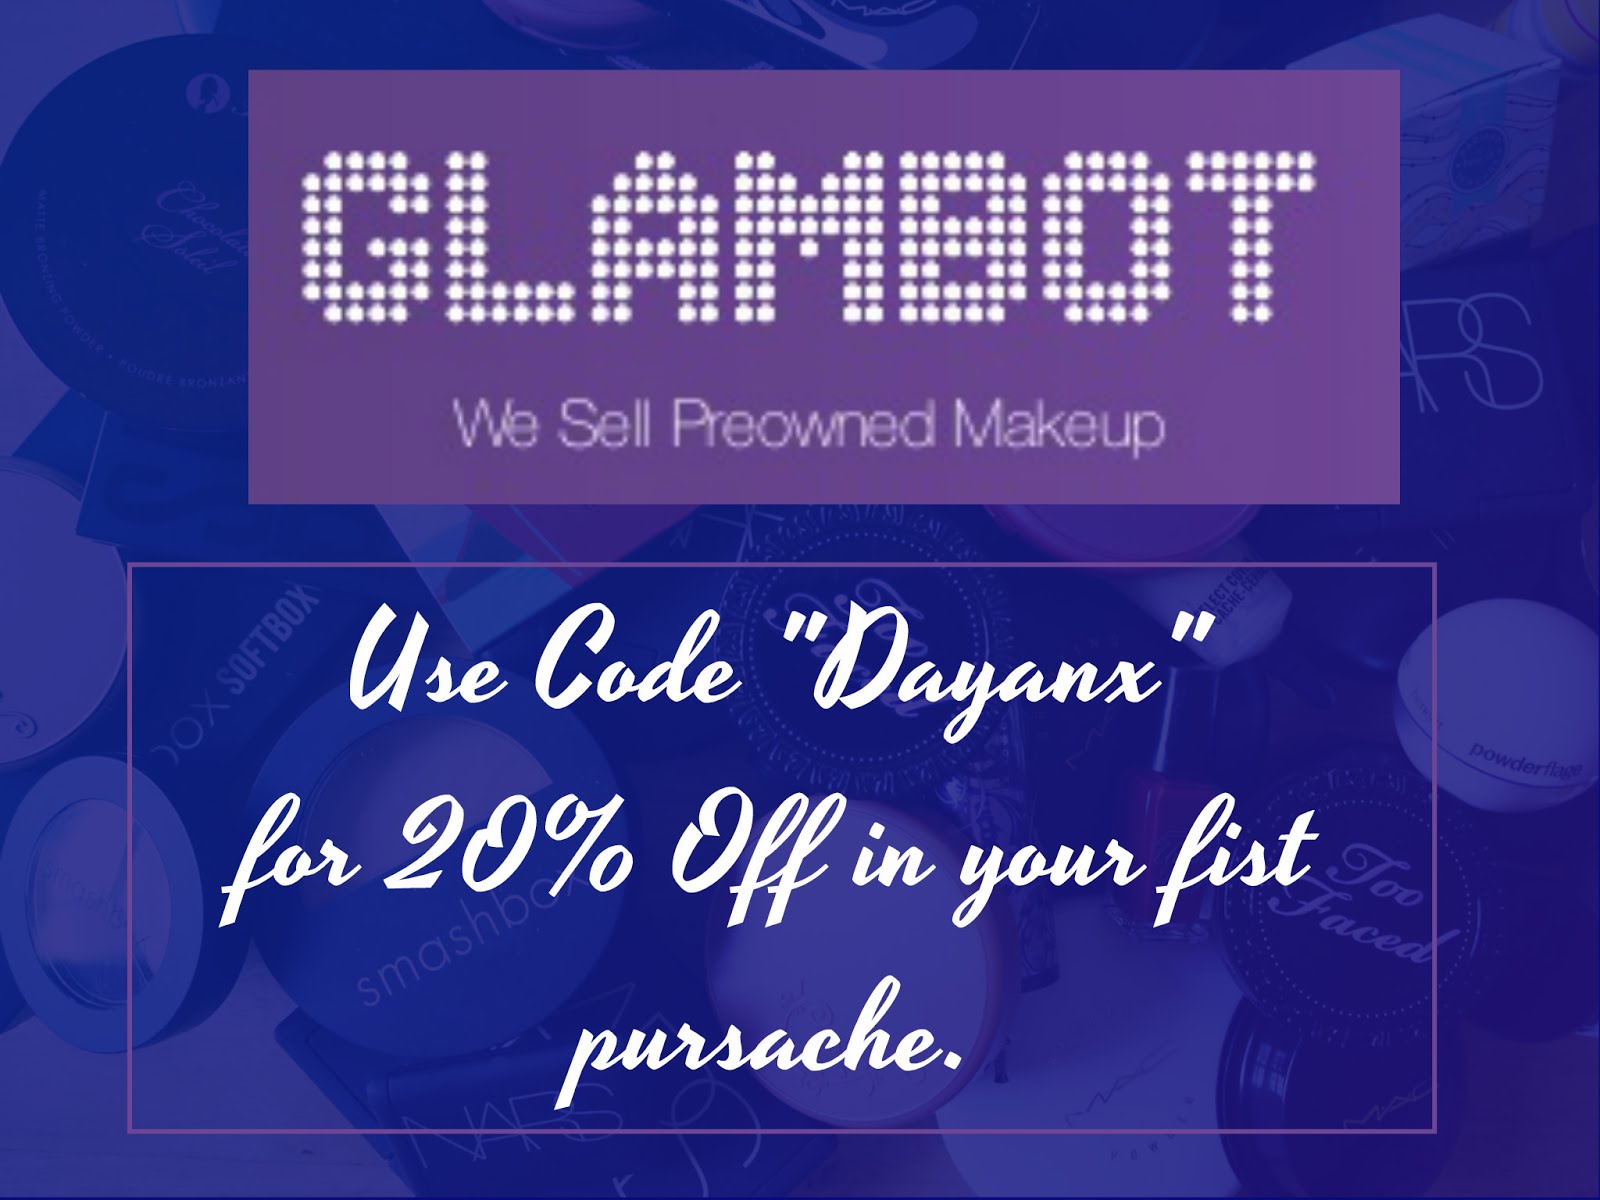 Glambot.com